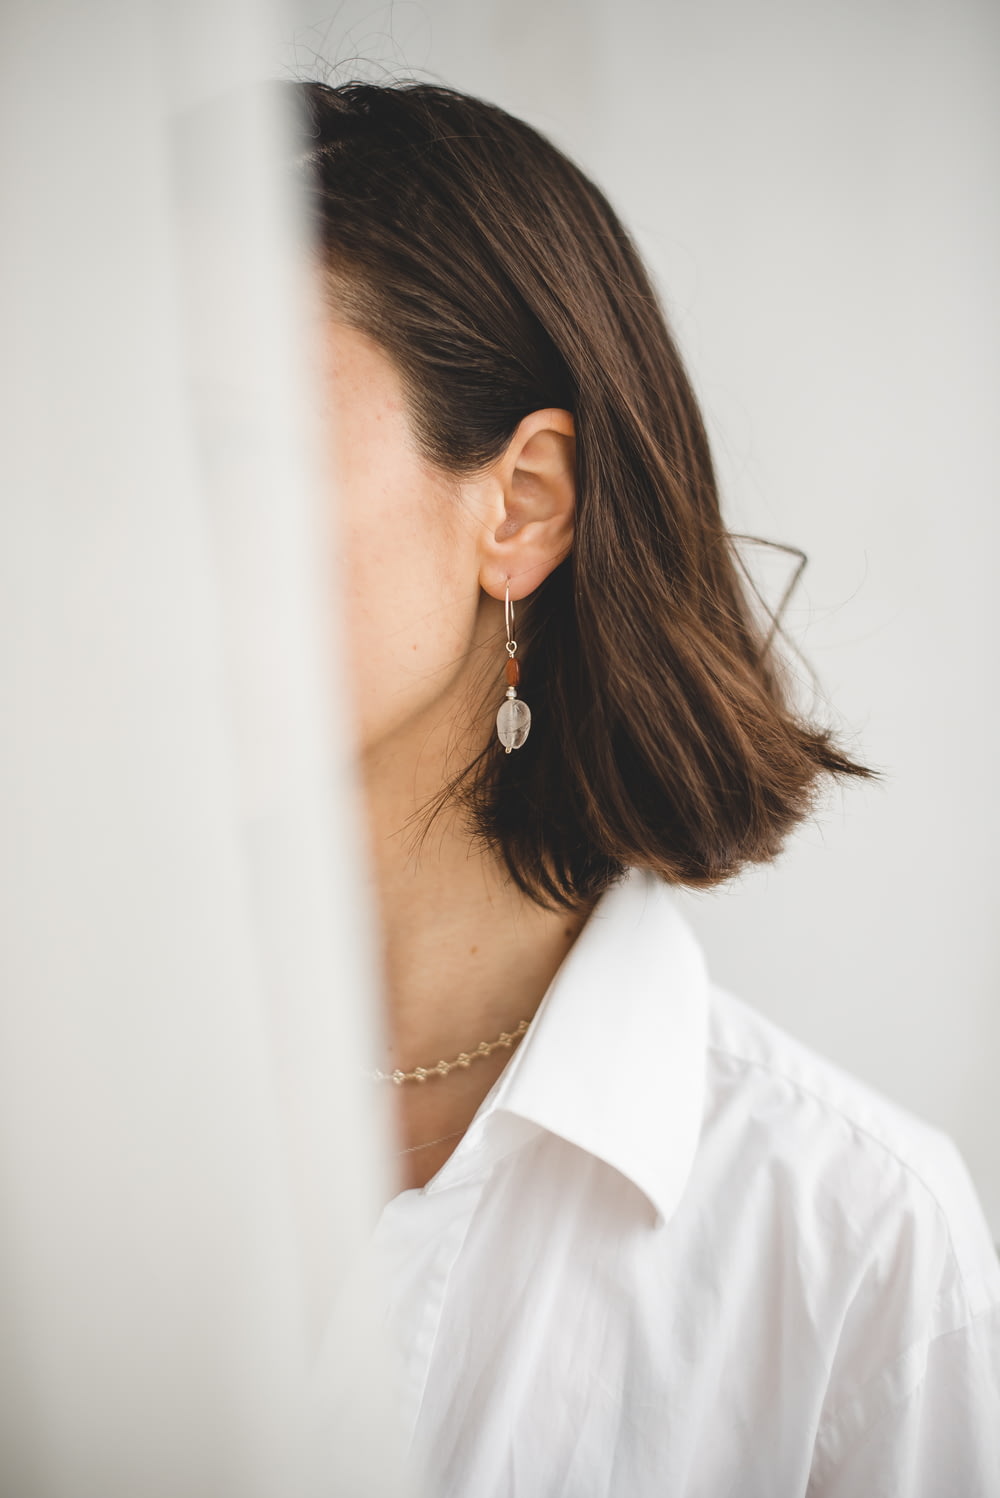 Femme en chemise blanche portant des boucles d’oreilles en argent